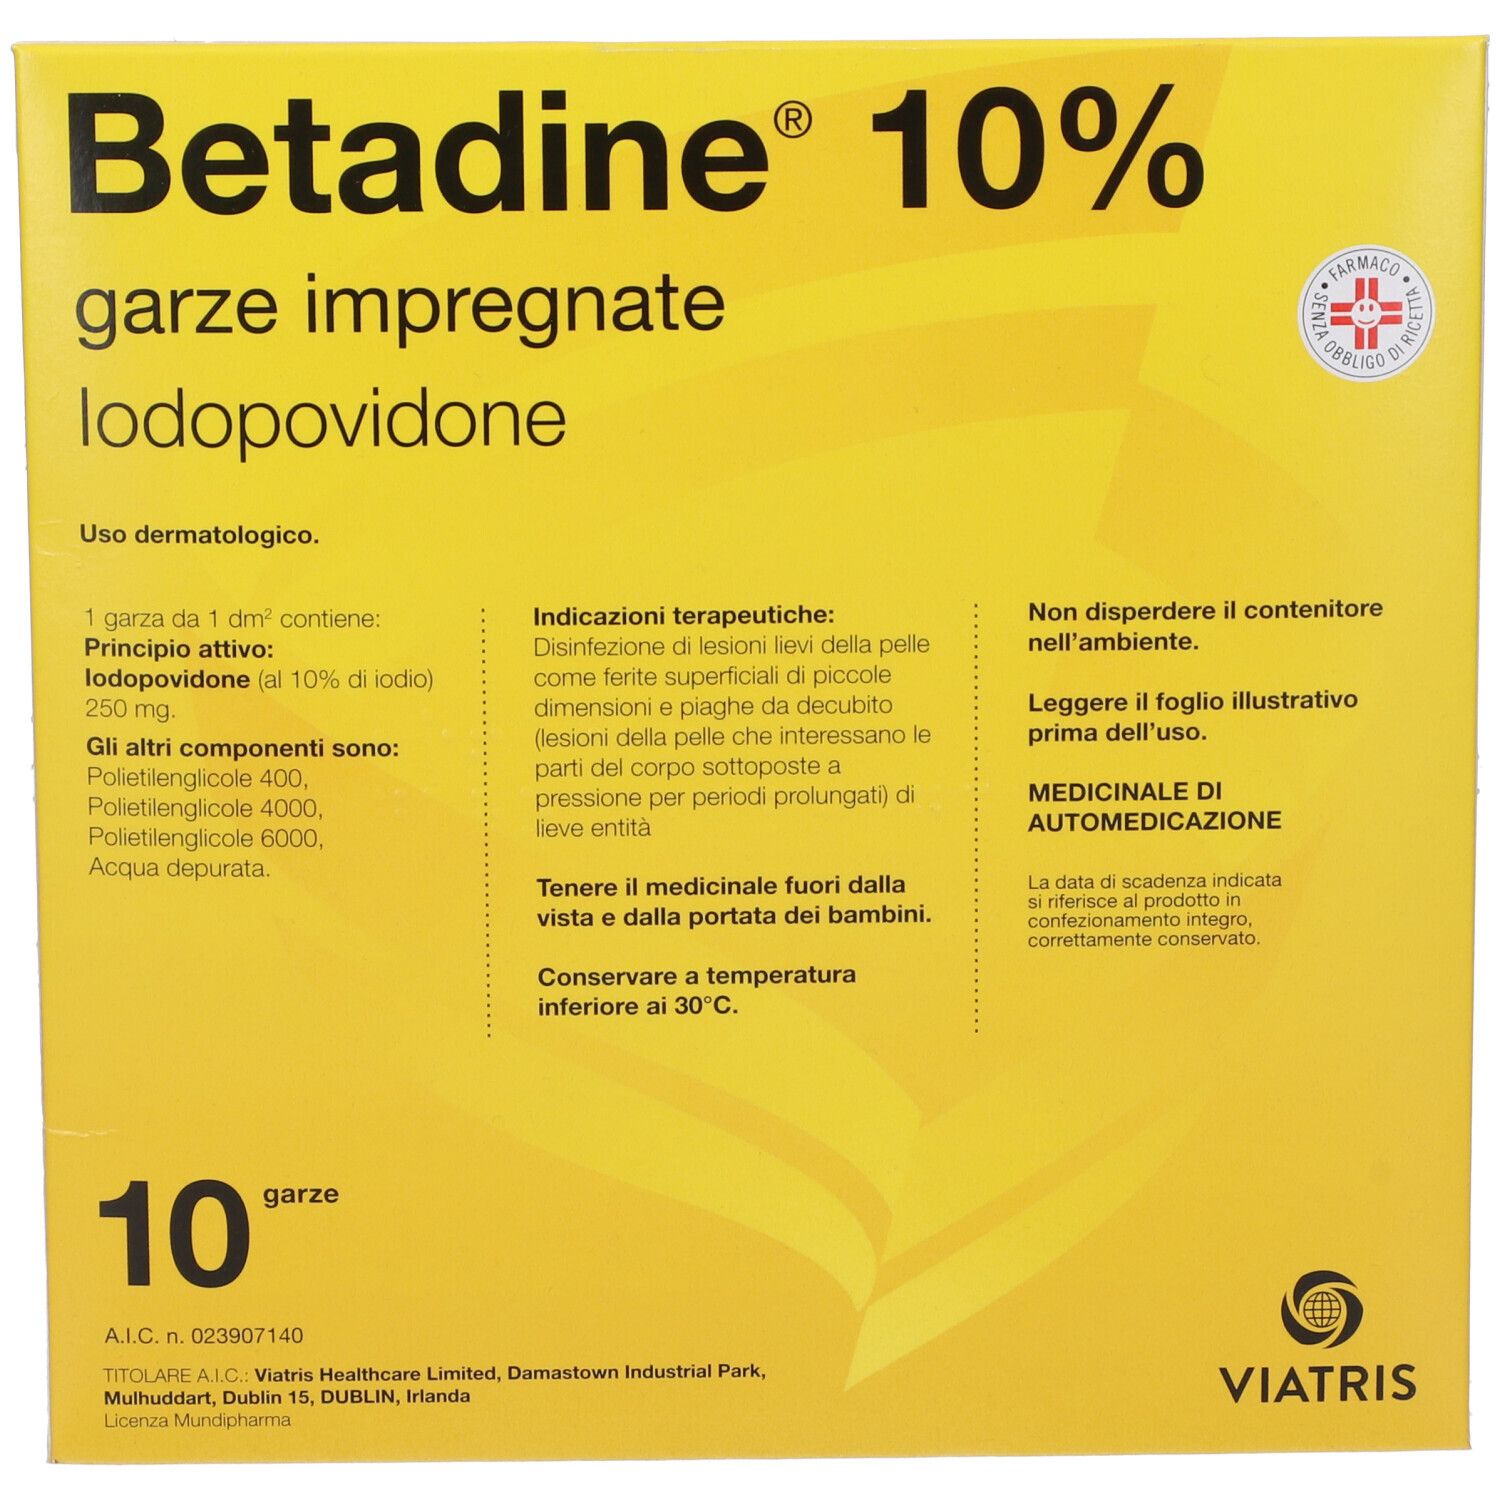 Betadine® Garze impregnate Iodopovidone 10% 10 pz